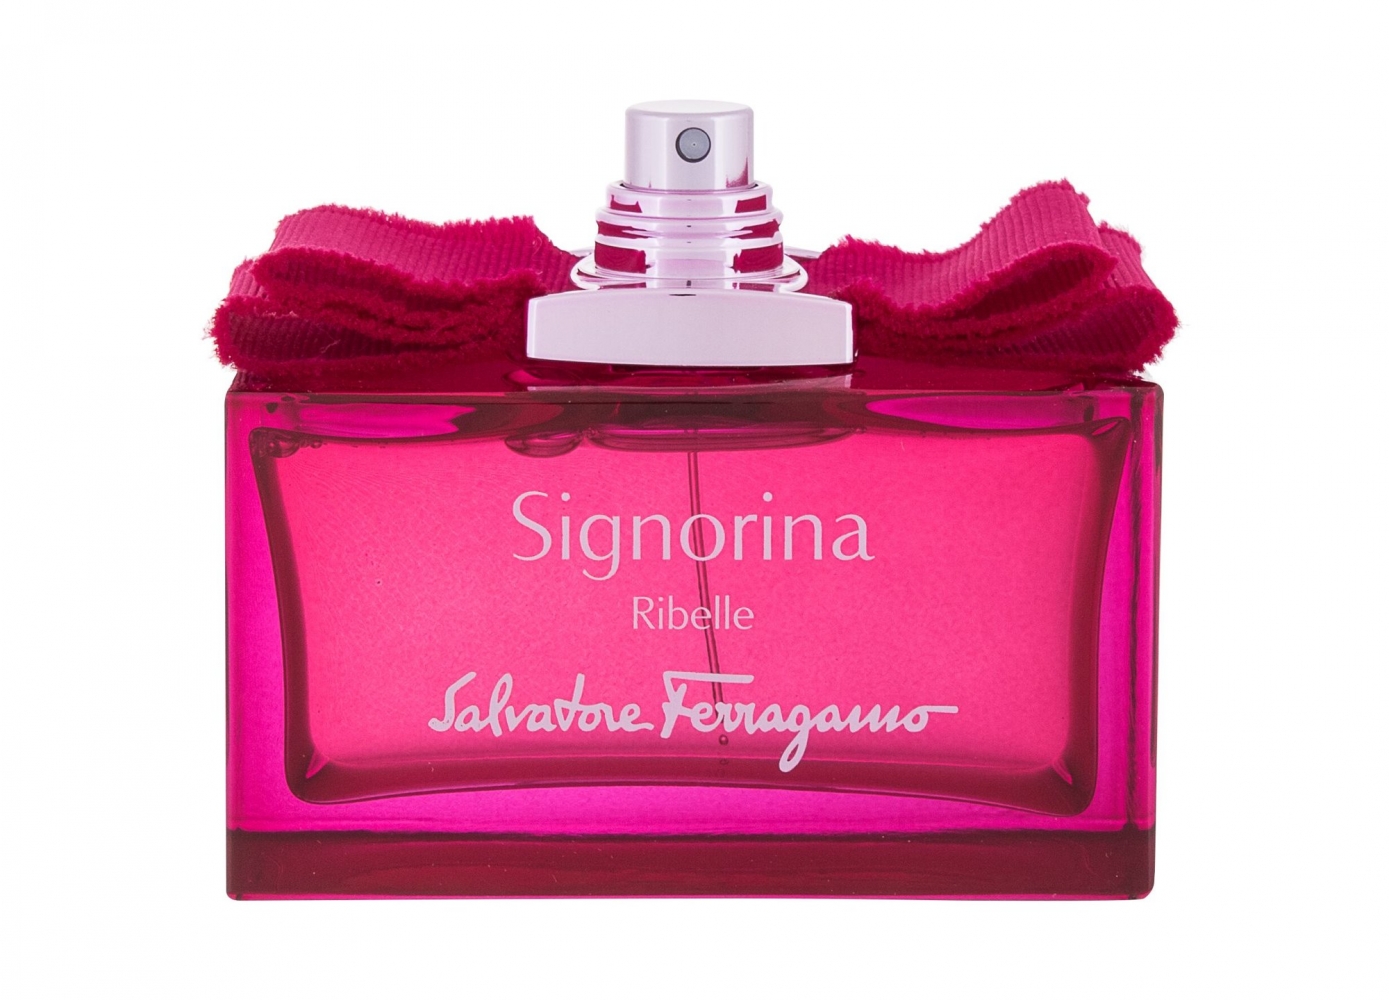 Signorina Ribelle - Salvatore Ferragamo - Apa de parfum EDP